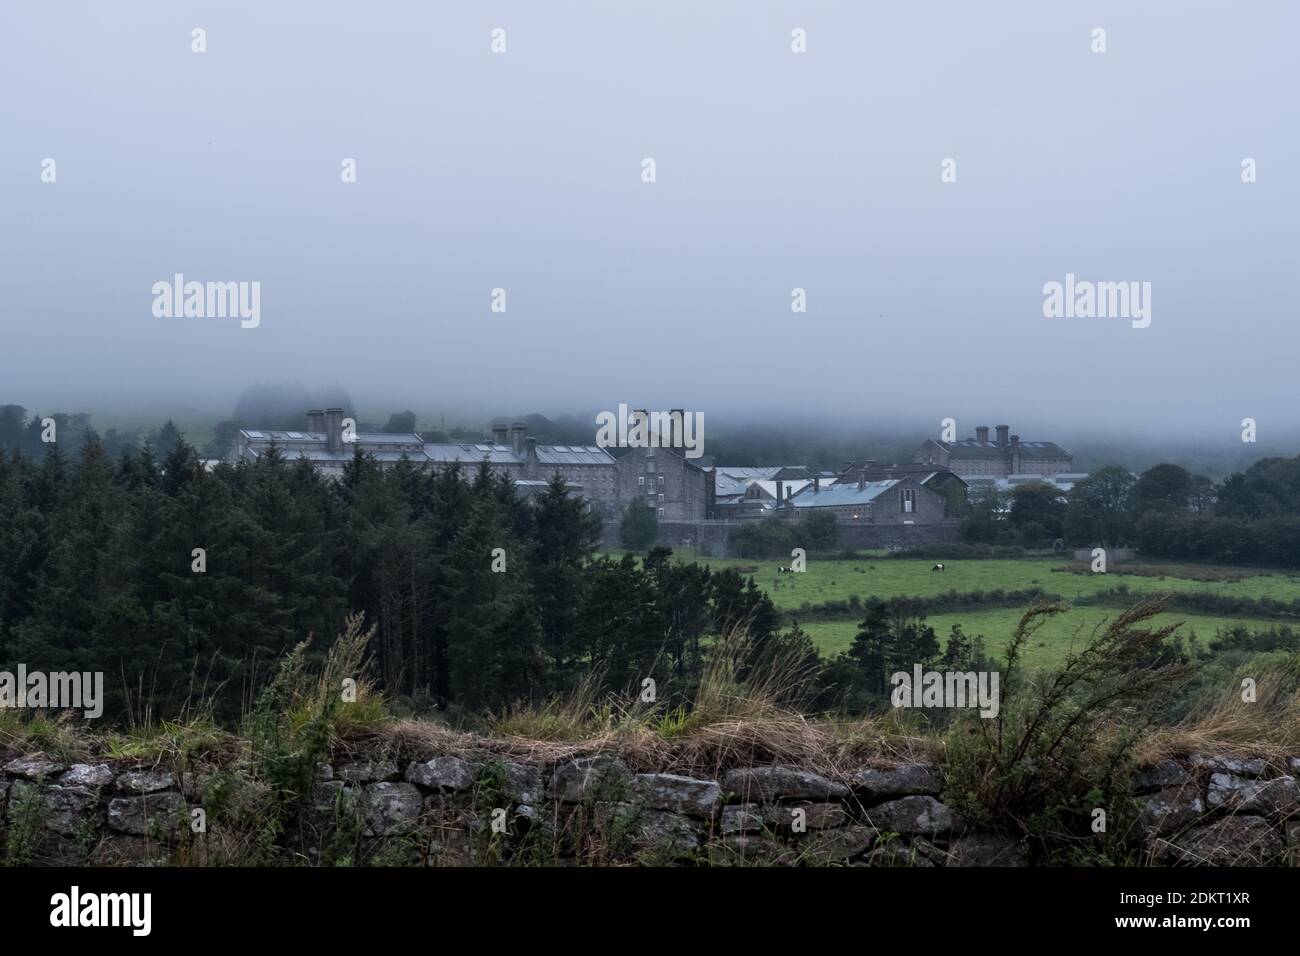 Vista distante de la prisión de Dartmoor, Princetown, Devon, Inglaterra, Reino Unido. Foto de stock